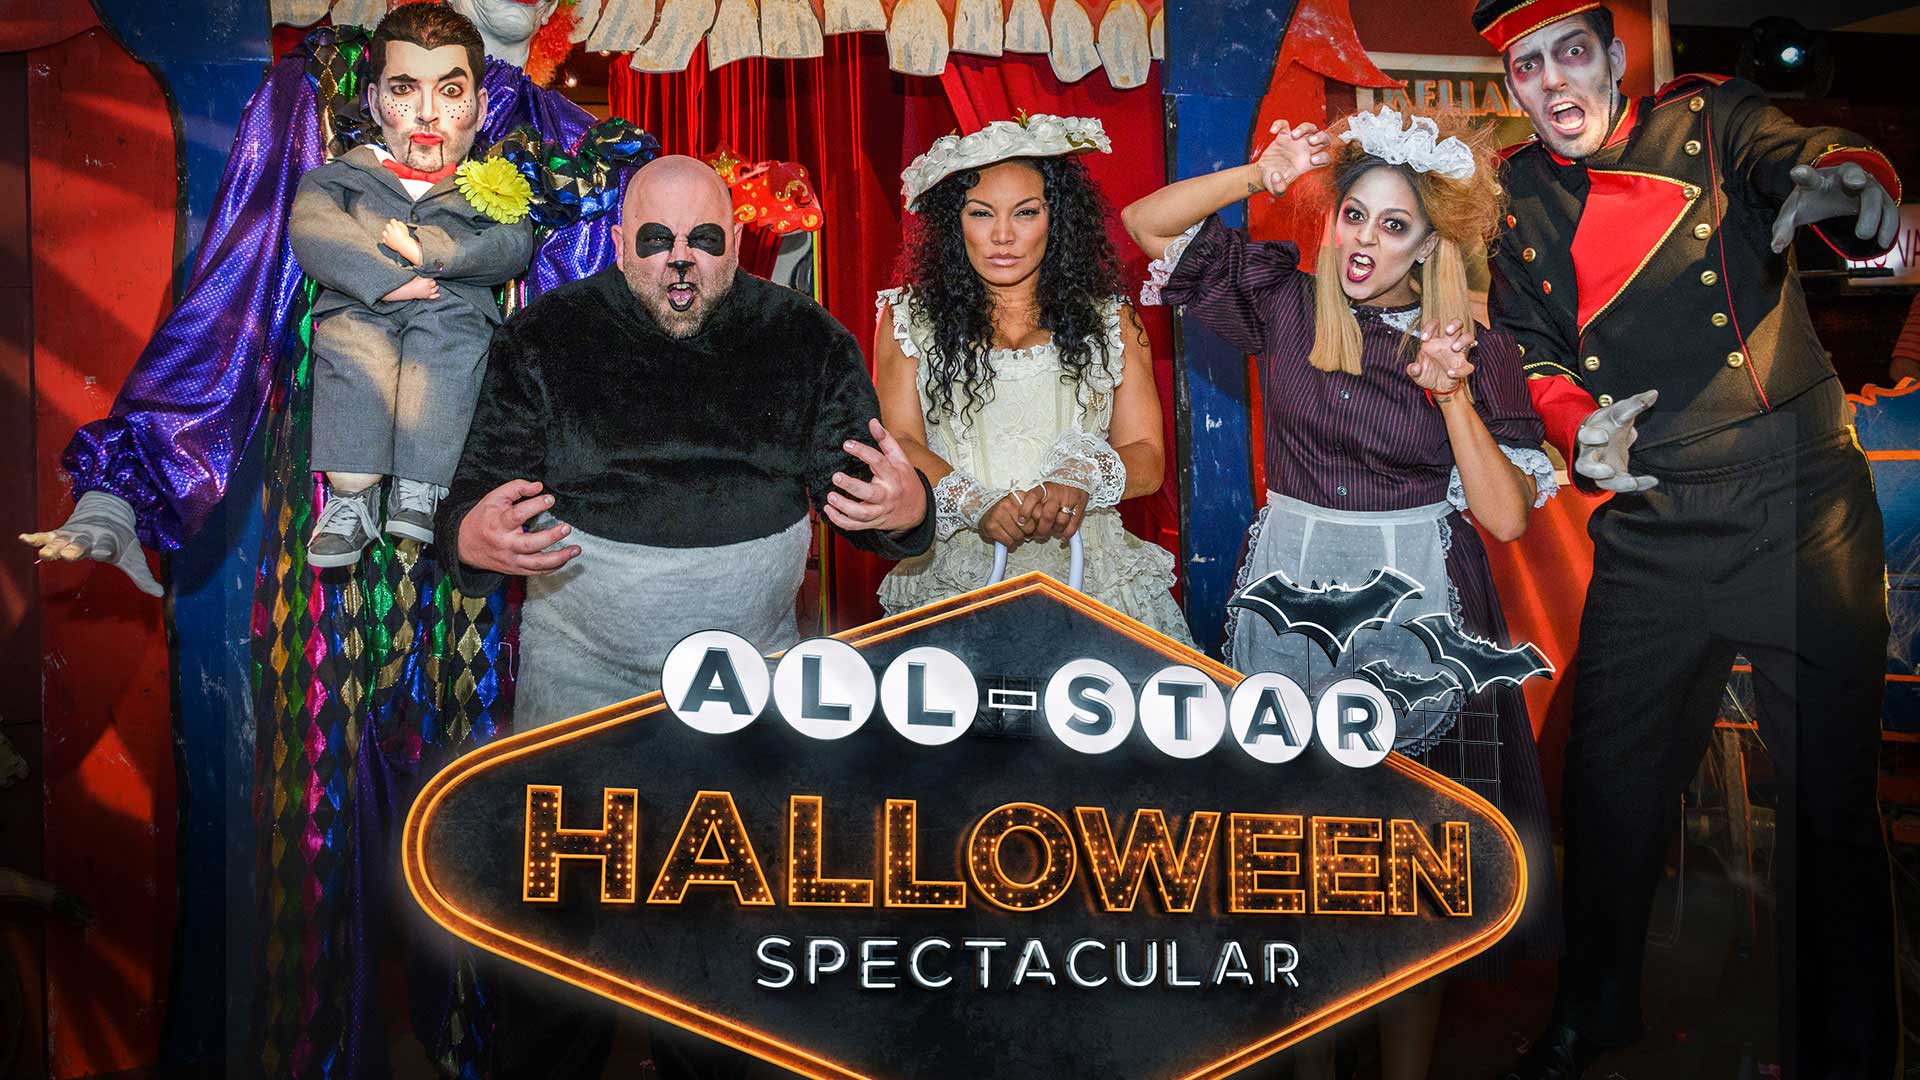  All Star Halloween Spectacular